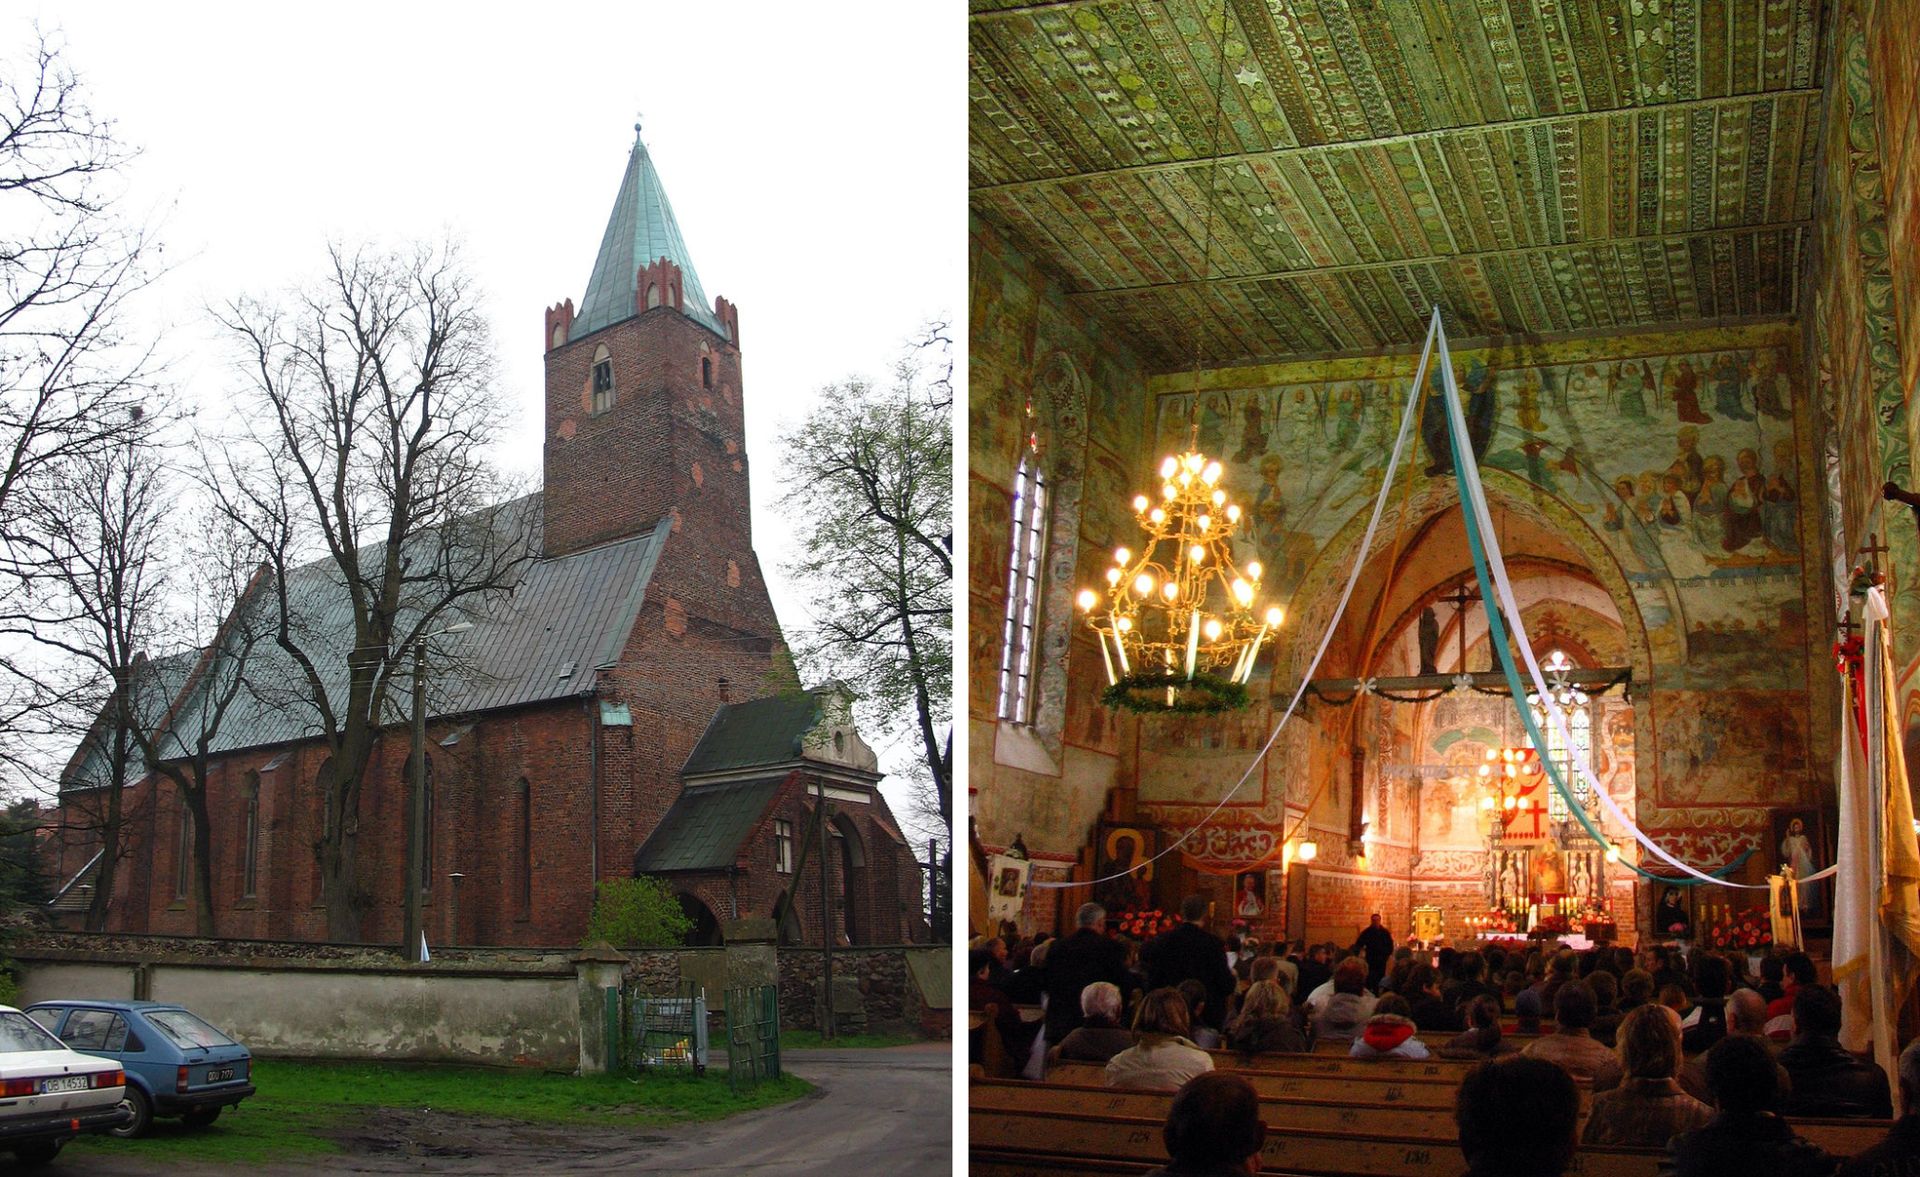 Wielki skarb ukryty we wsi. Jedyny taki kościół w Polsce